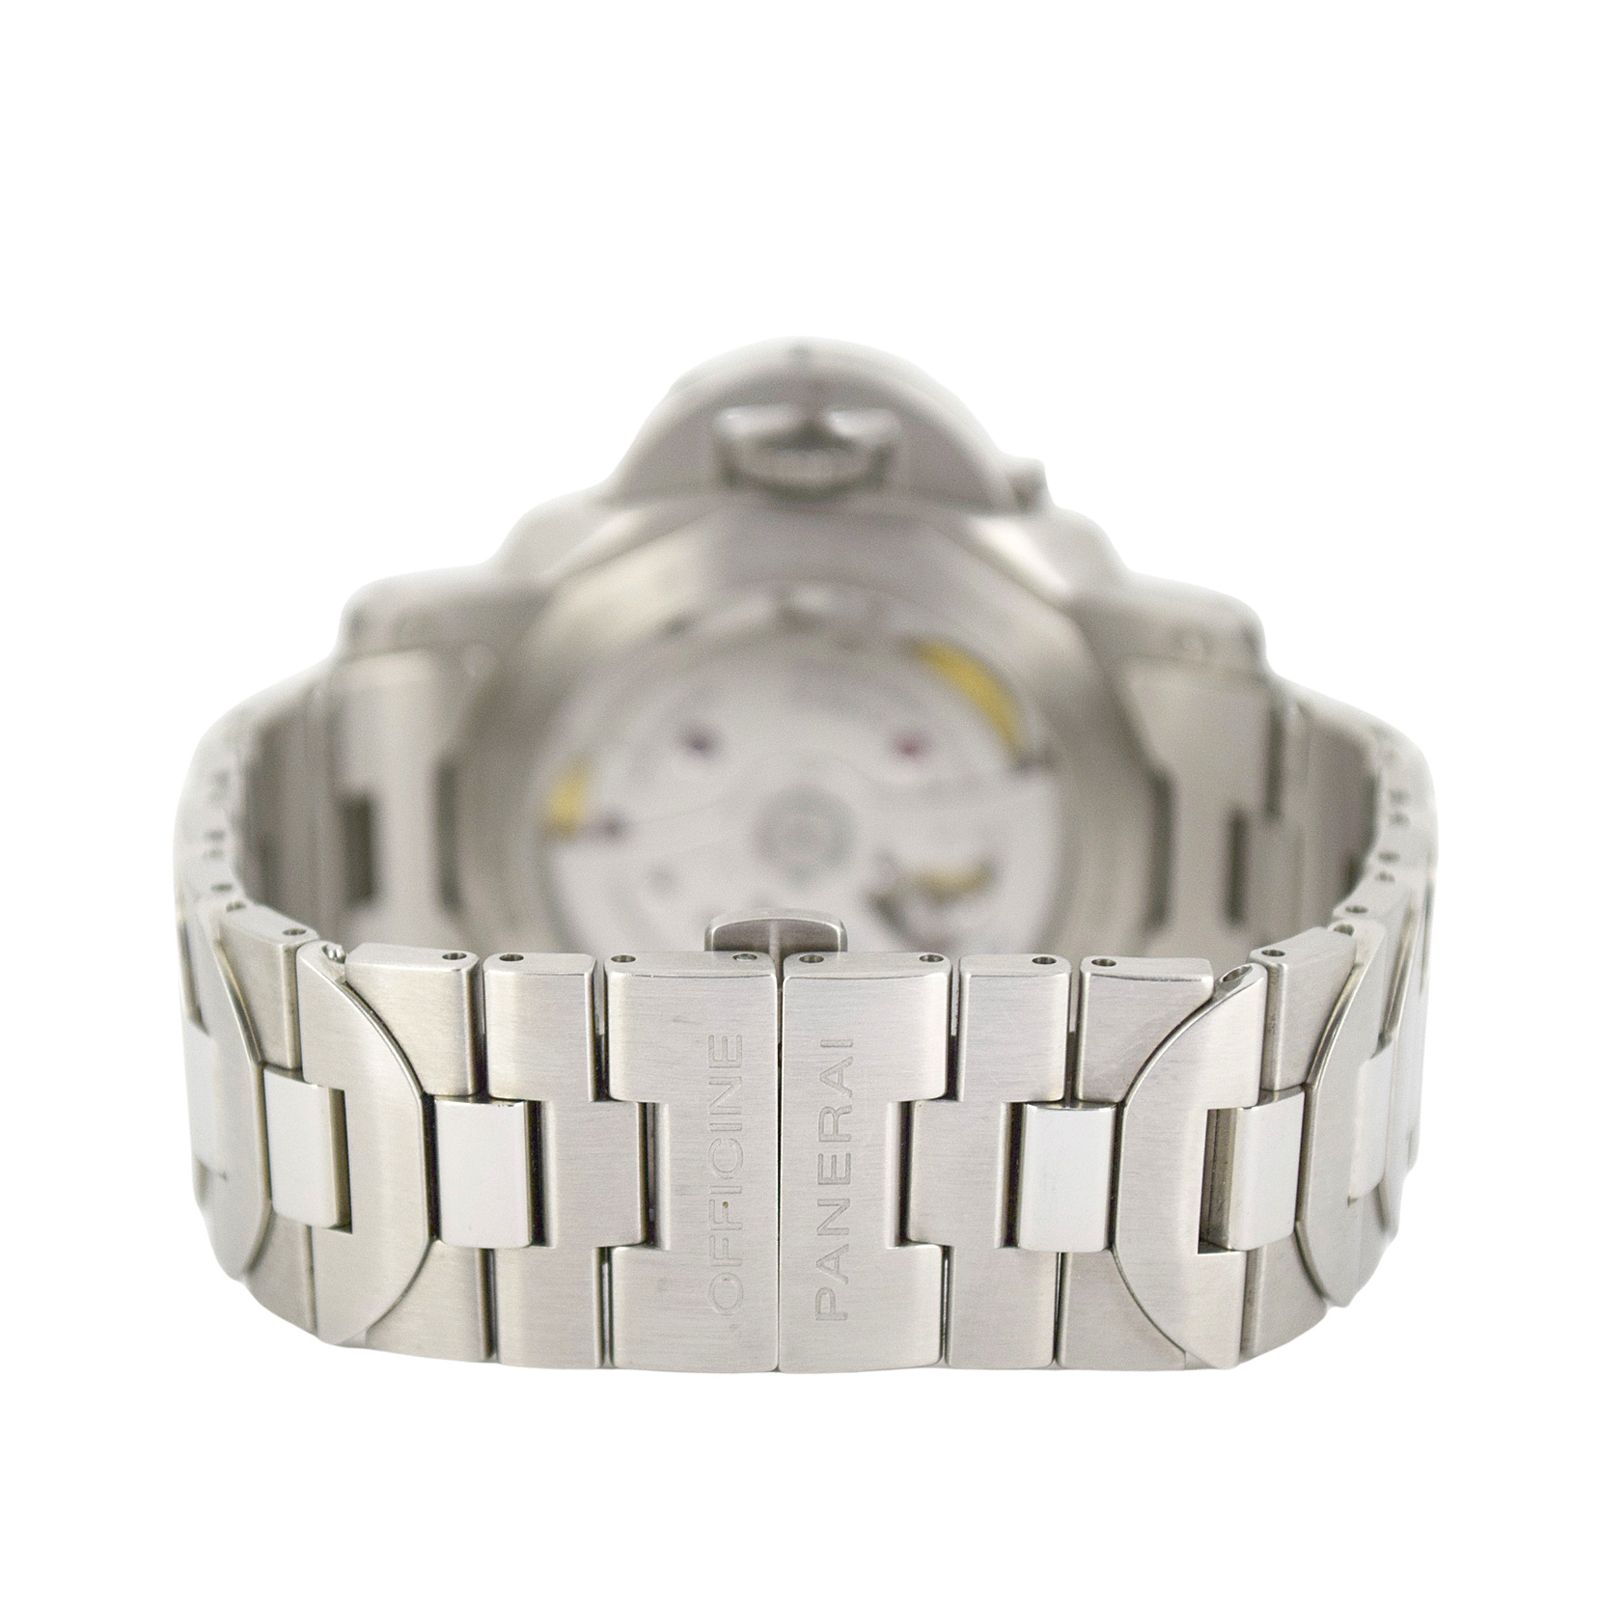 パネライ ルミノールマリーナ 1950 3デイズ アッチャイオ PAM00722 OP7055 メンズ 腕時計